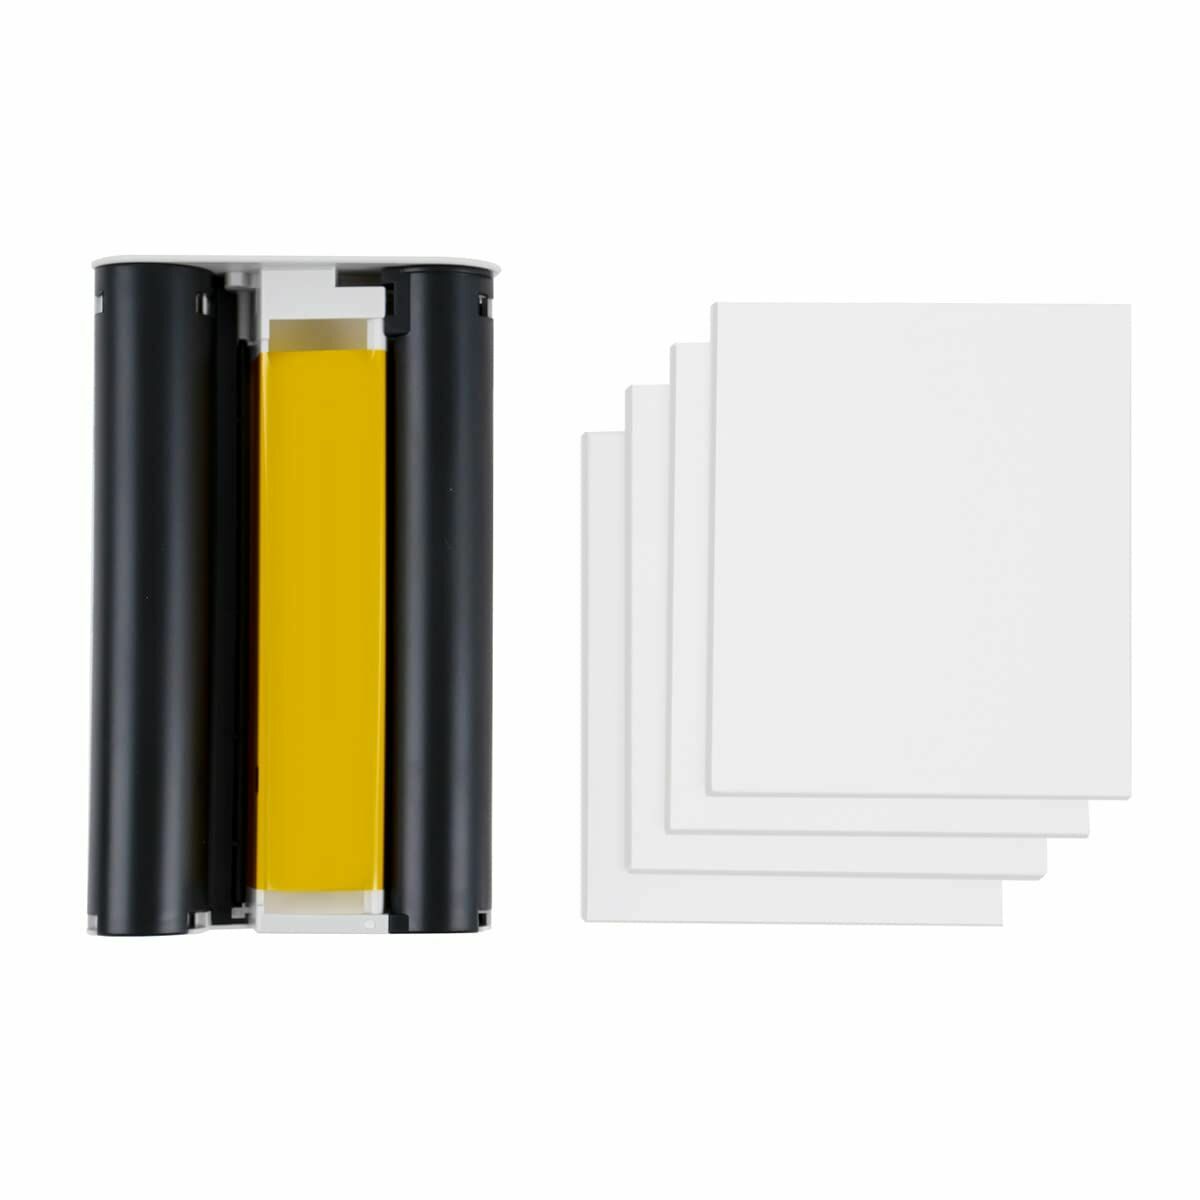 Pellicola Fotografica Istantanea Xiaomi Instant Photo Paper 3" - Disponibile in 3-4 giorni lavorativi